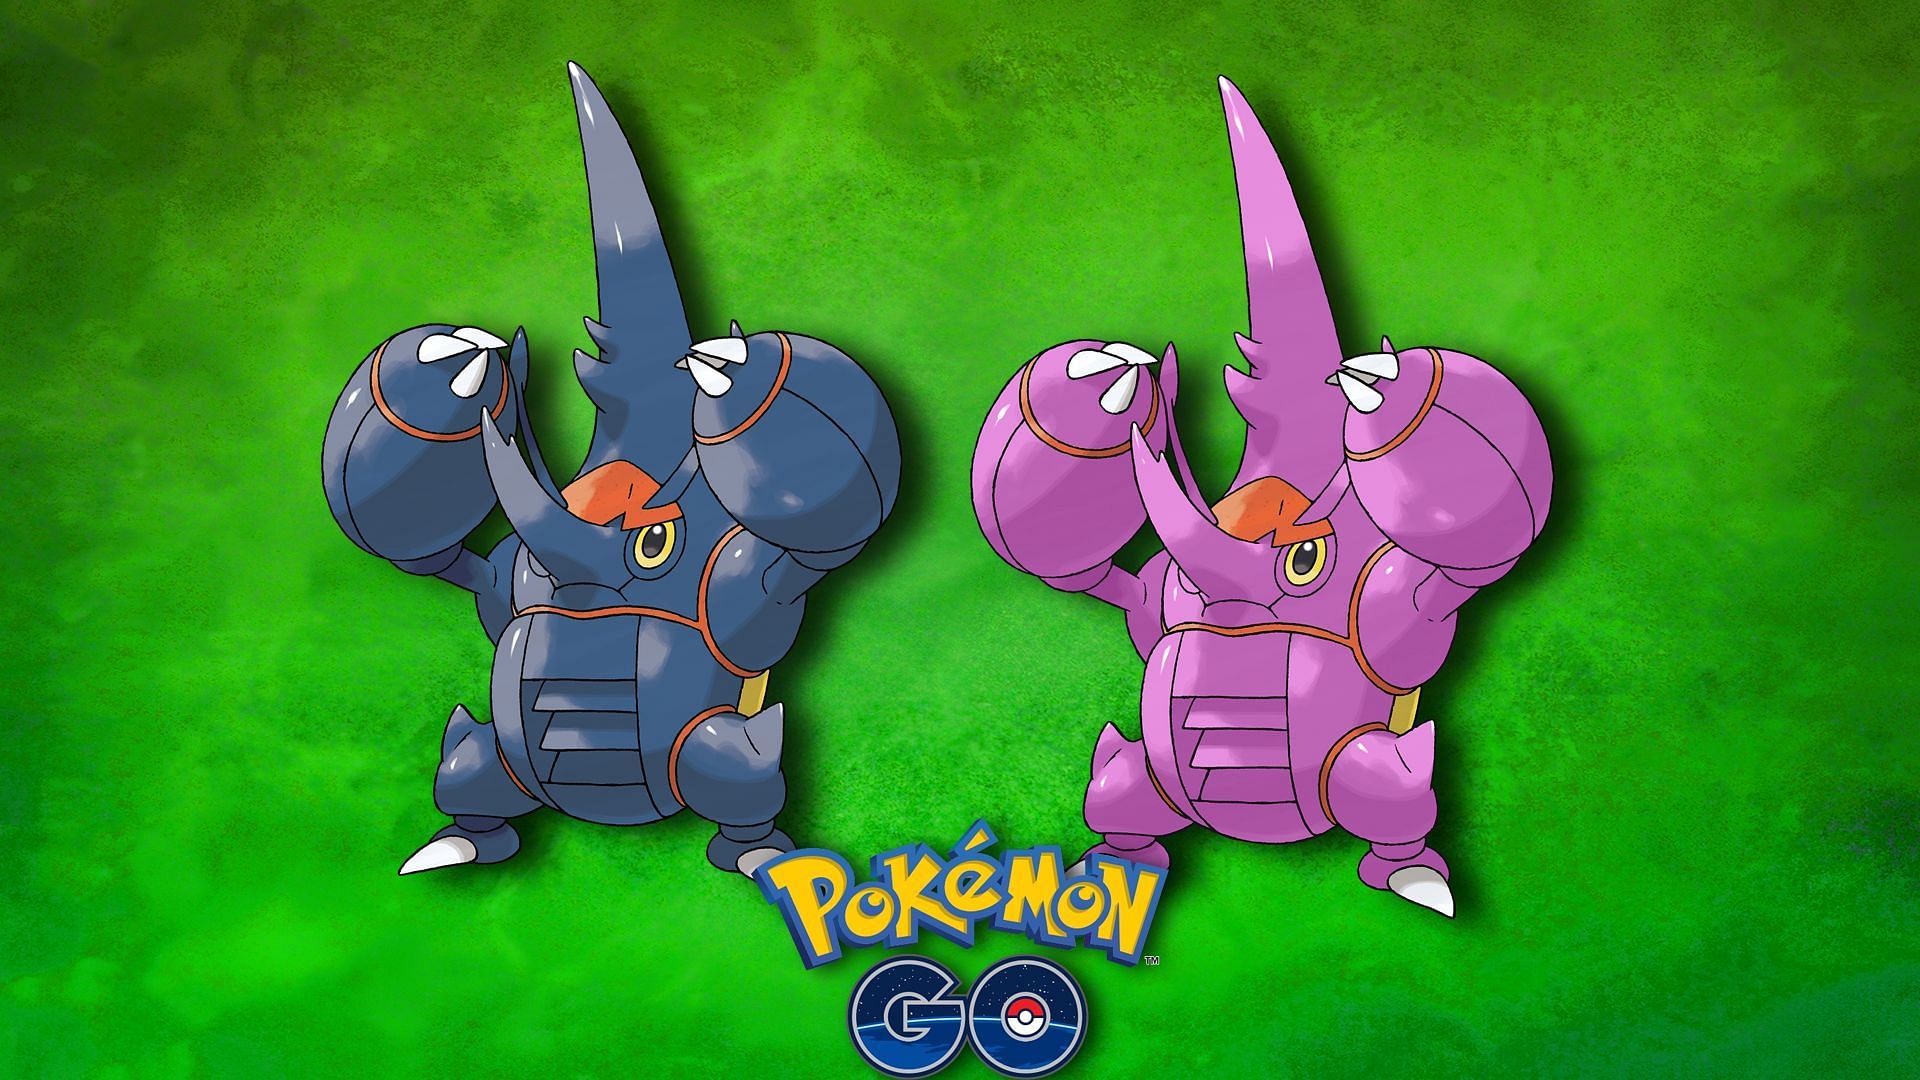 Mega Heracross and Shiny Mega Heracross (Image via The Pokemon Company)